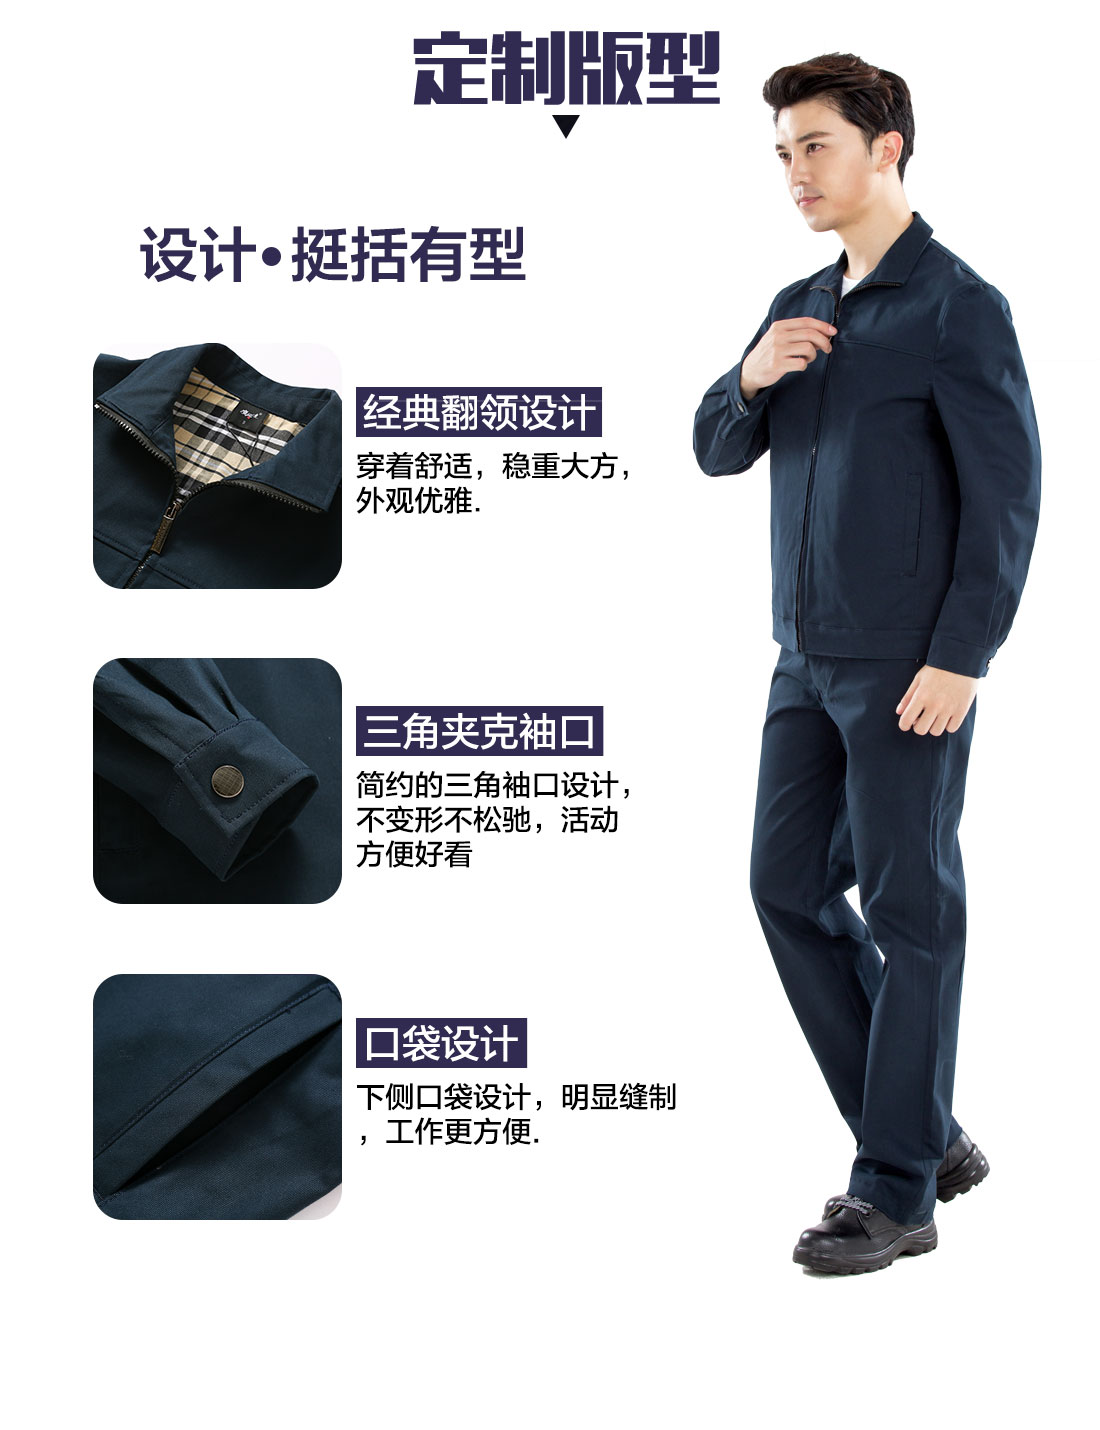 上海长宁工作服的3D立体版型设计